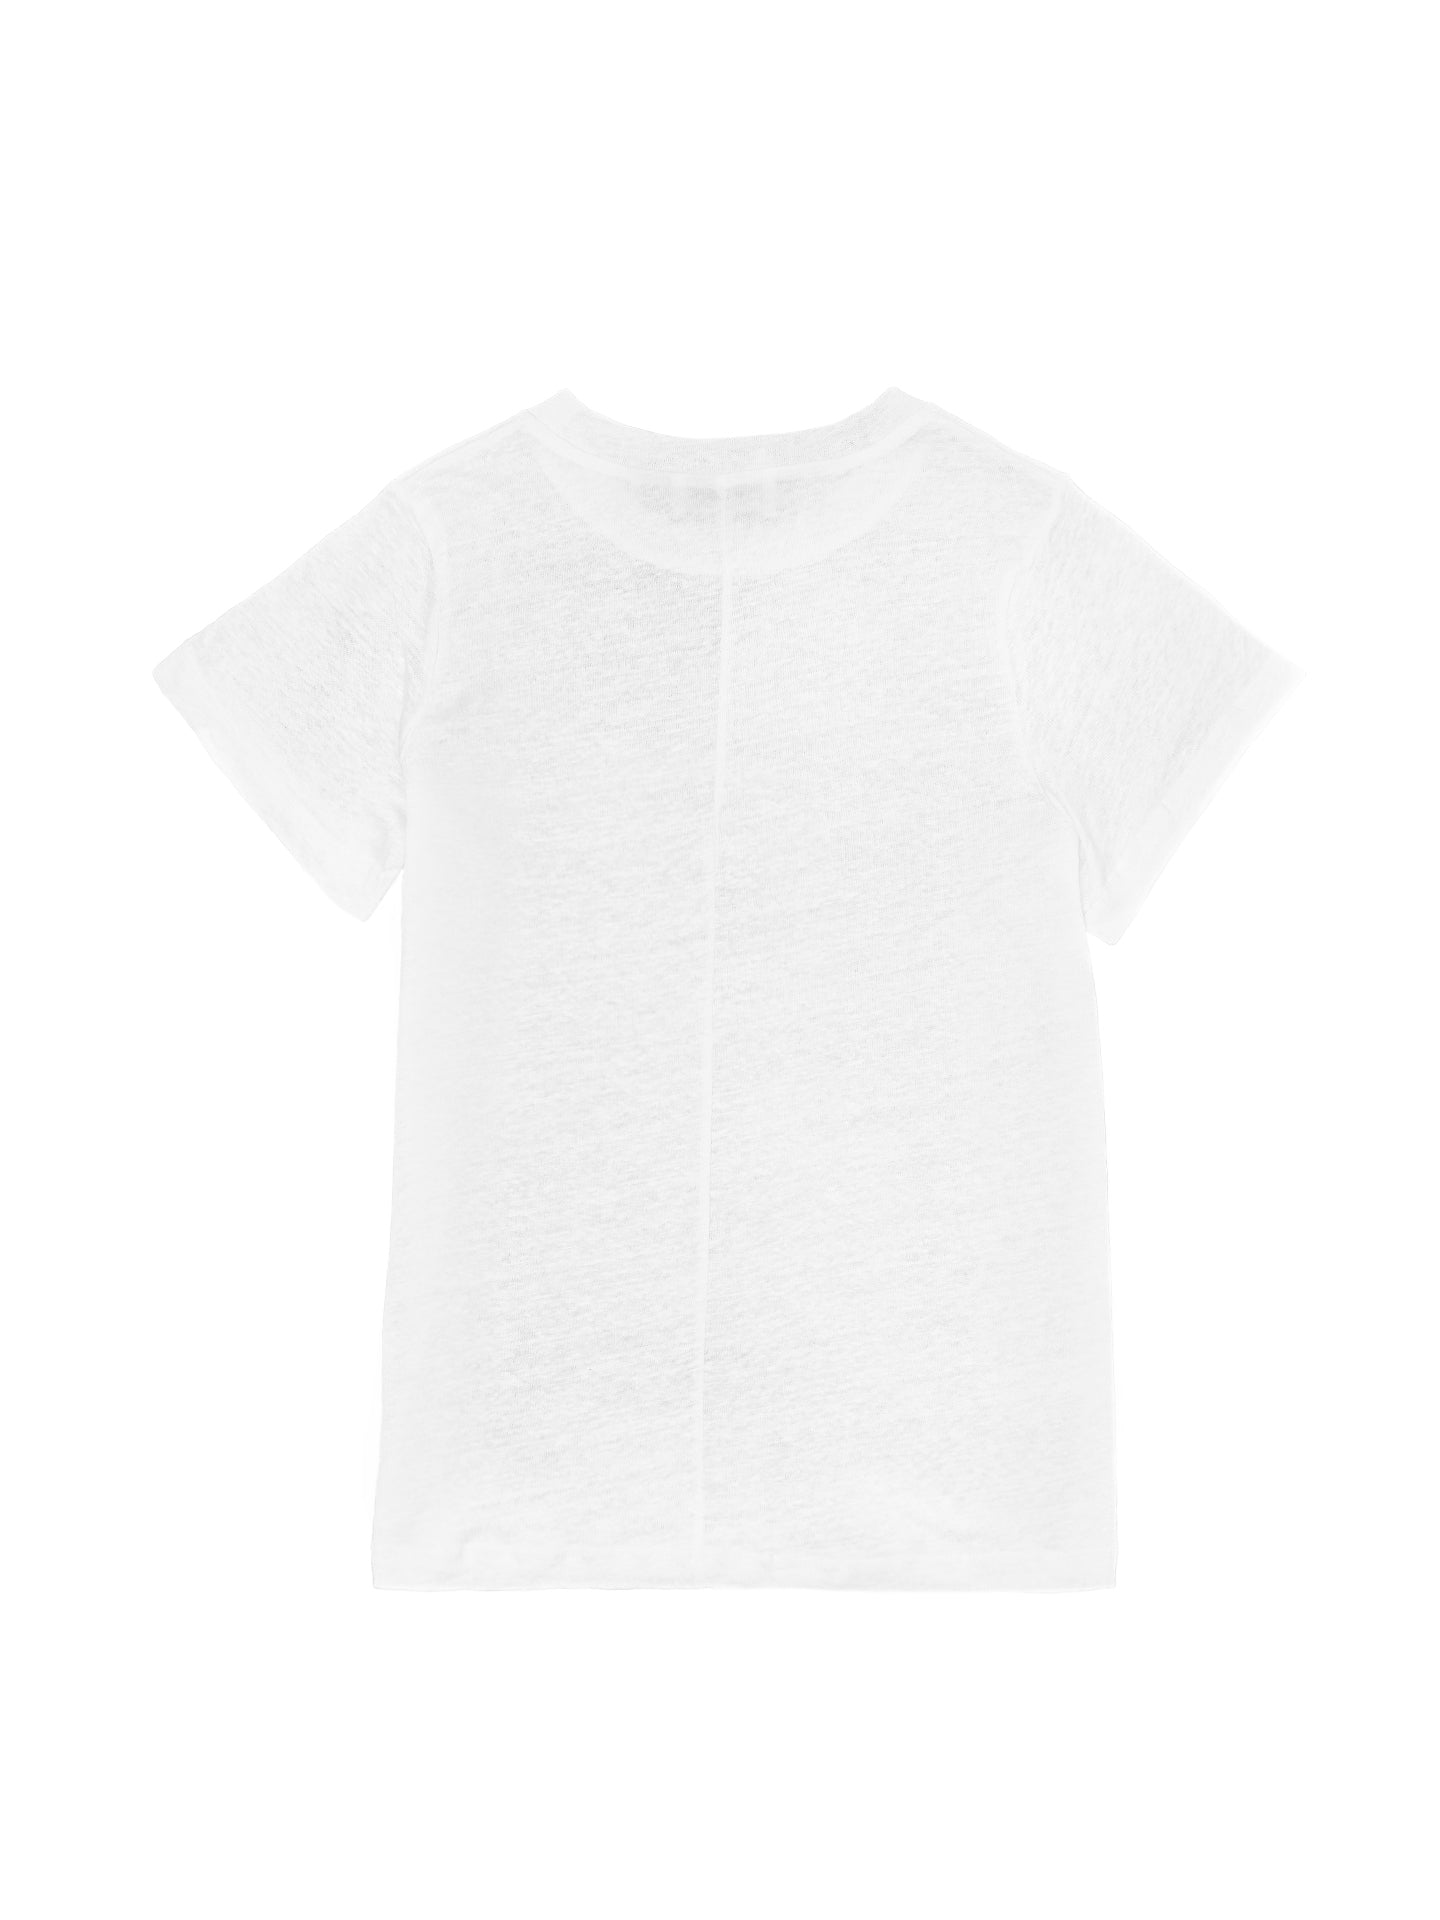 Leinen T-Shirt - weiß